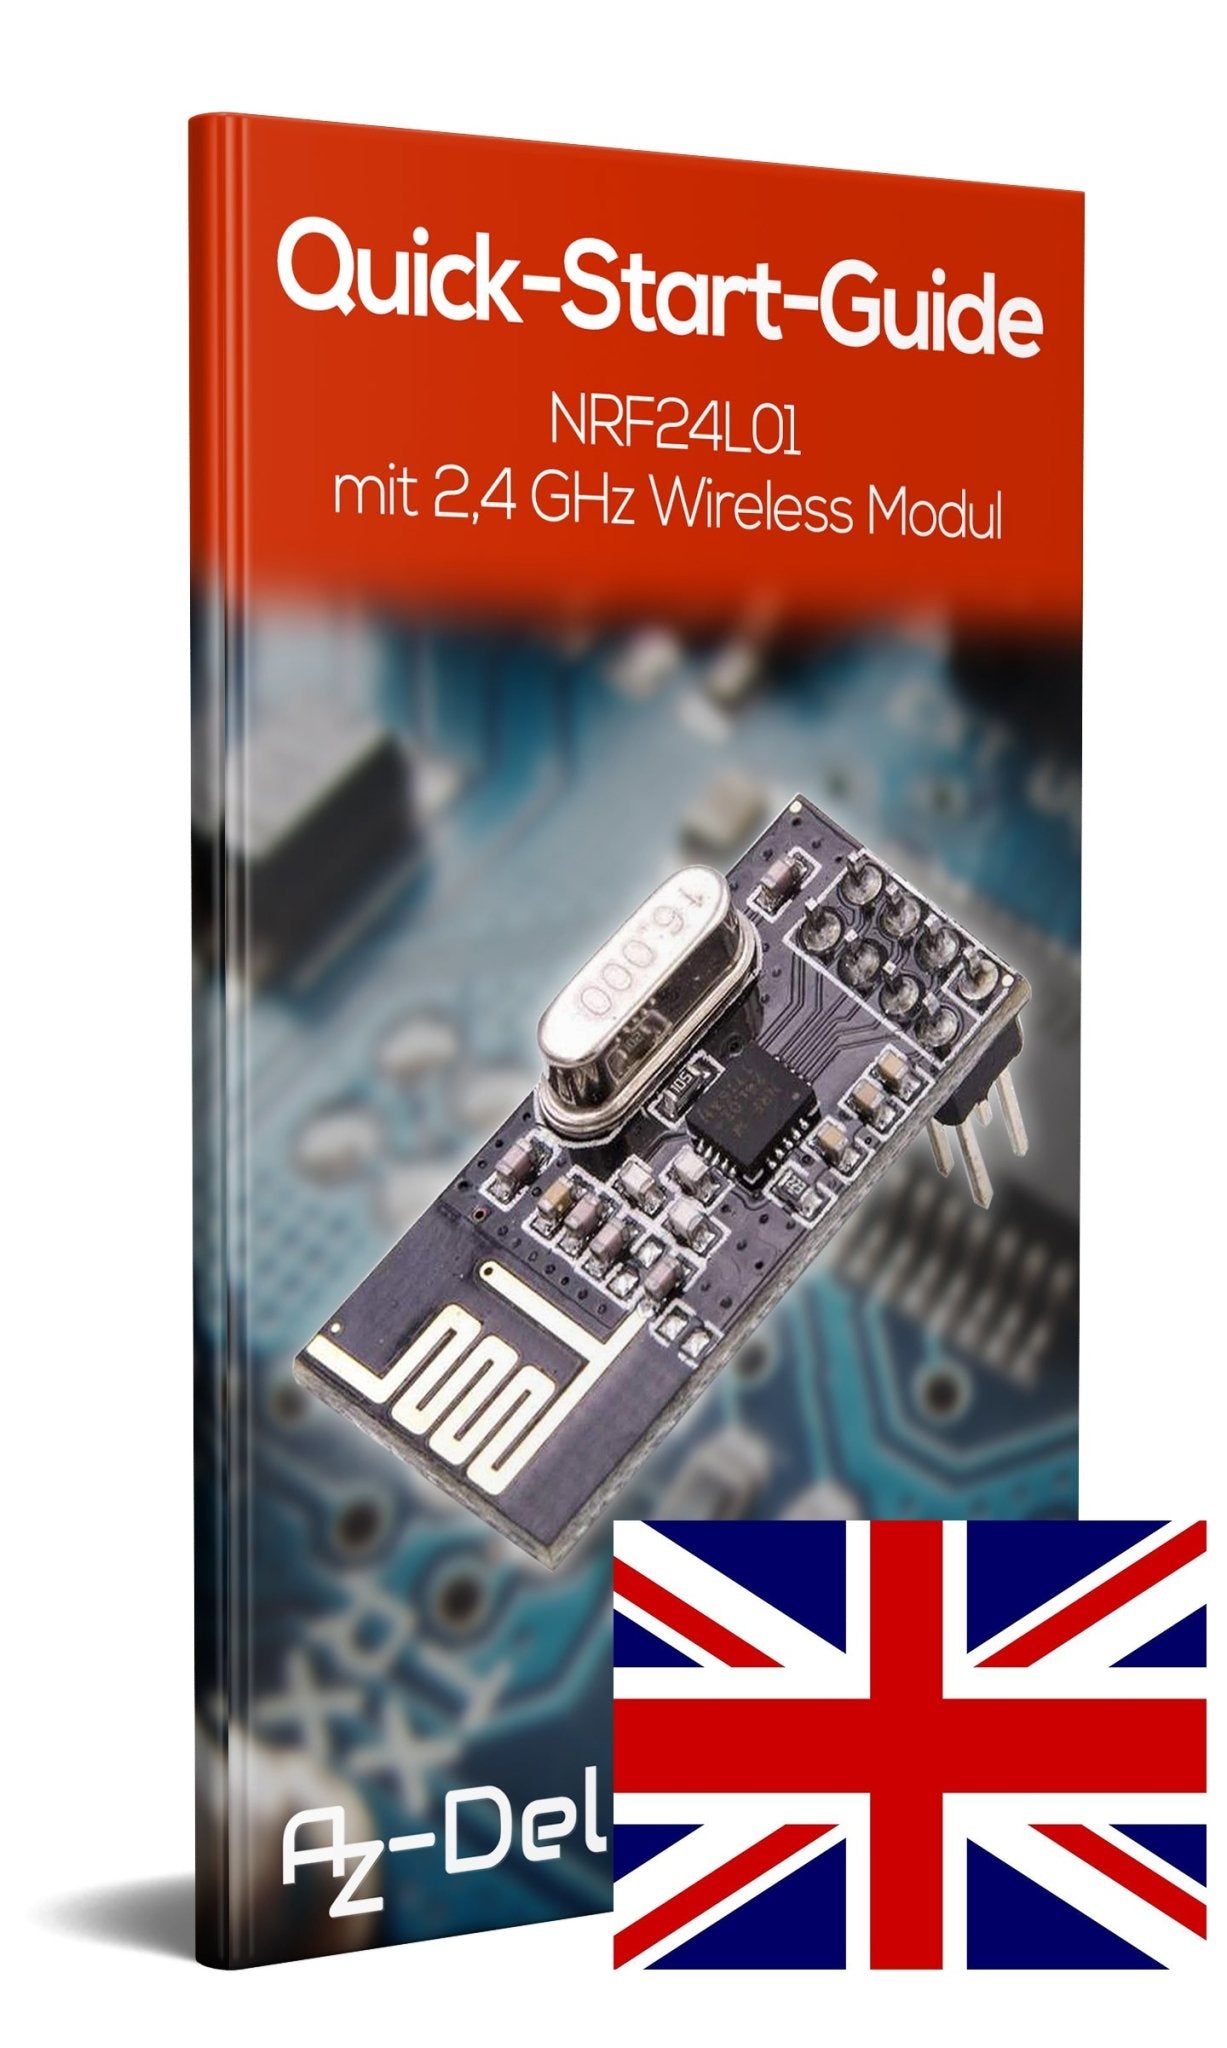 NRF24L01 mit 2,4 GHz Wireless Module für ESP8266, Raspberry Pi und Arduino - AZ-Delivery